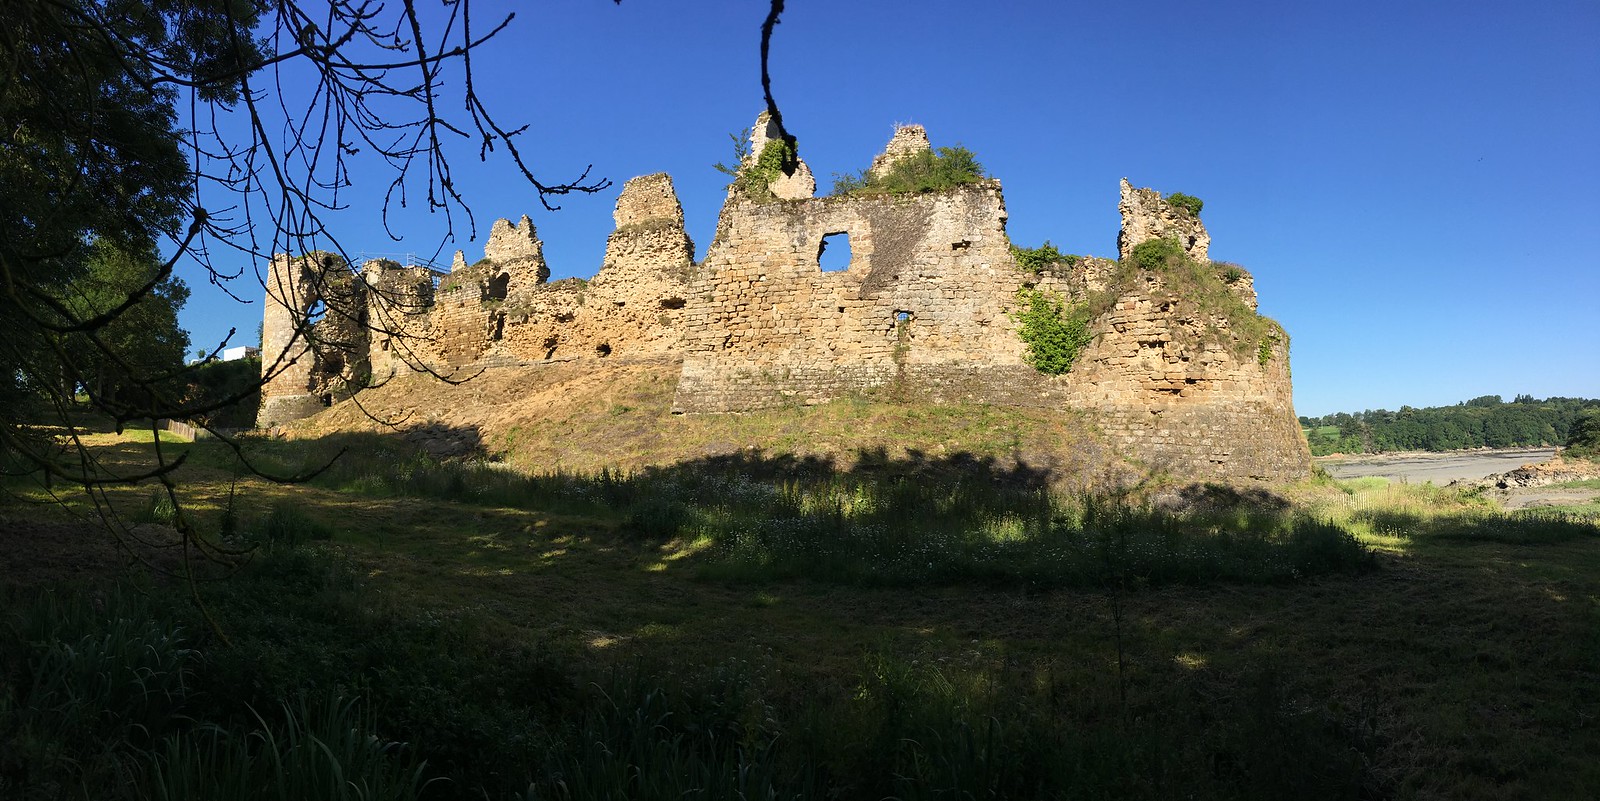 Le chateau du Guildo, autrefois haut lieu de la noblesse locale, a souffert du poids des ans